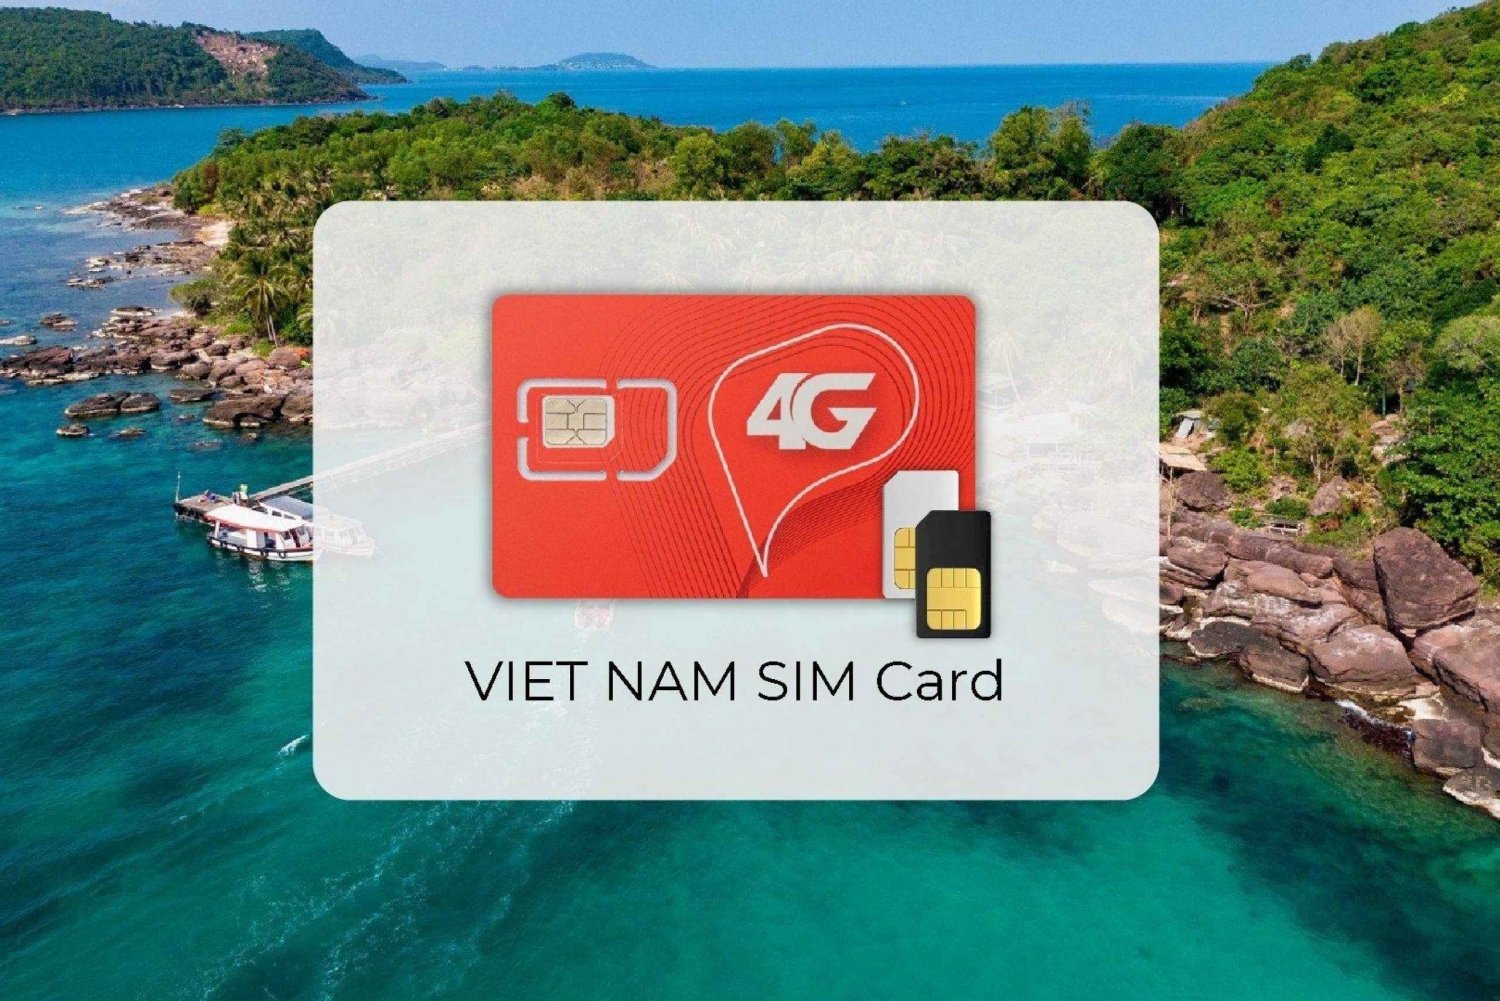 Hanoi: Viettelin turisti-SIM-kortti, jossa on 4G-mobiilidataa